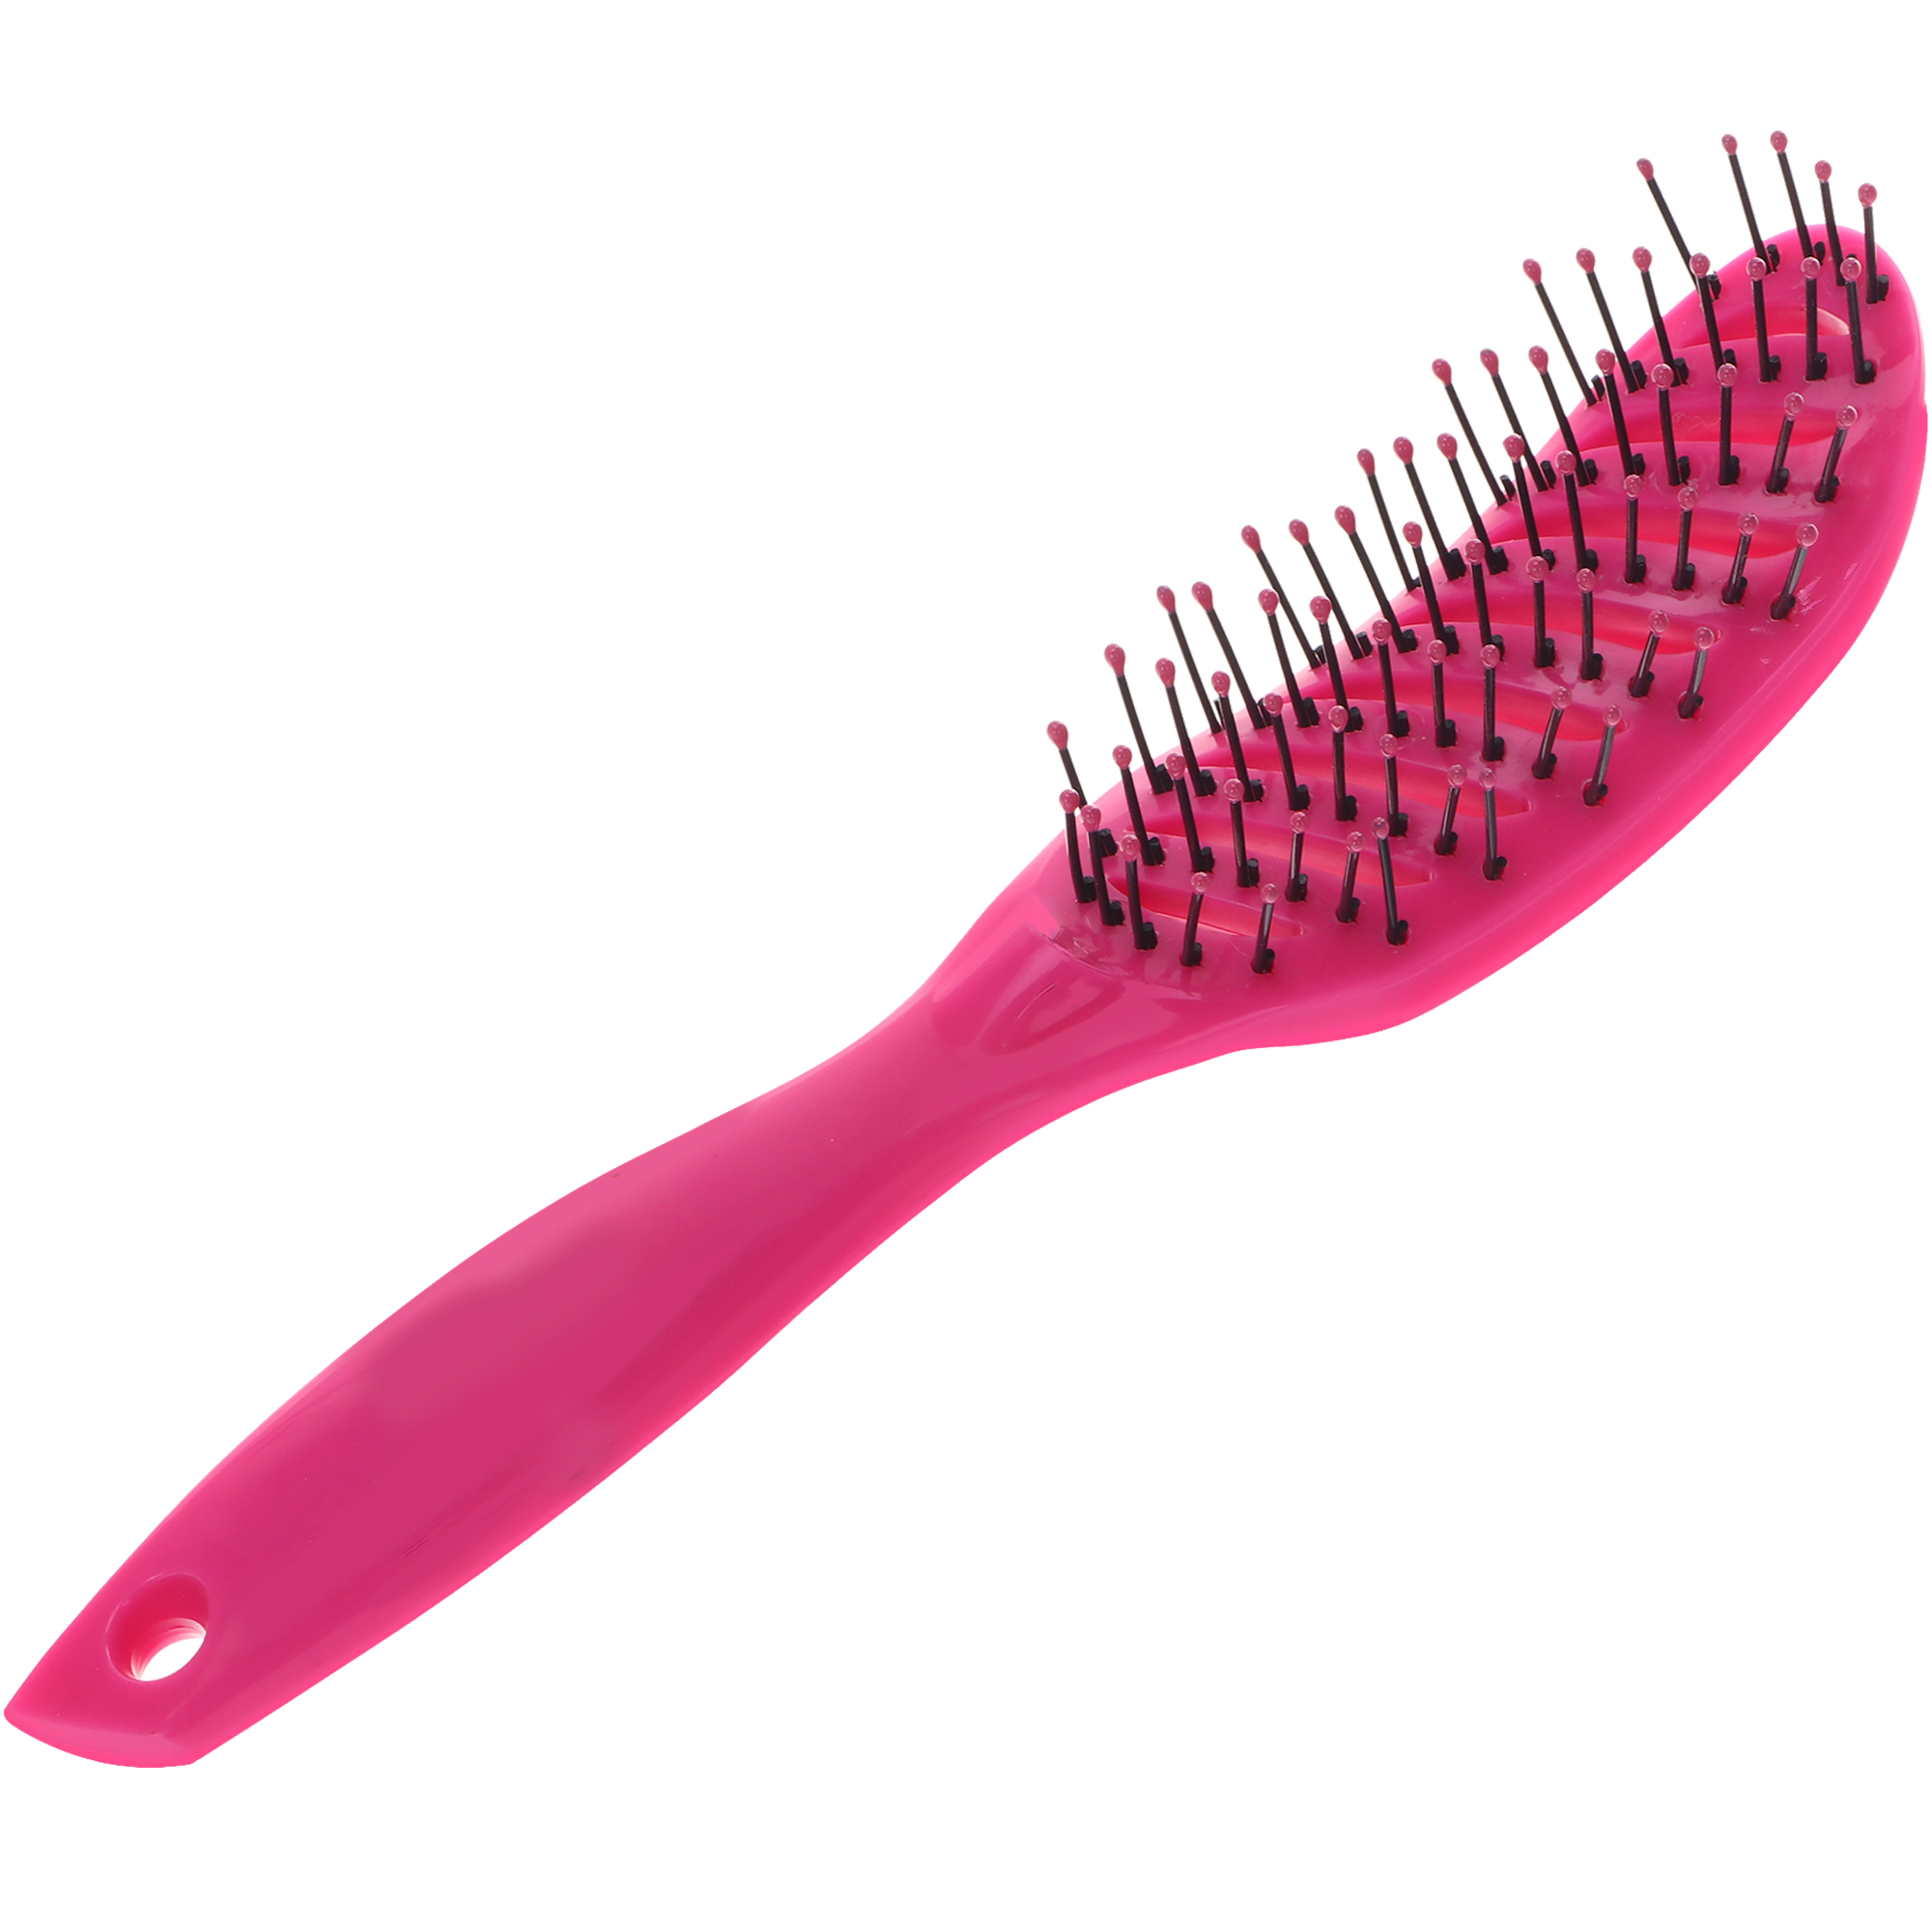 Расческа Nice View каркасная для укладки волос с пластиковыми зубьями L-23 розовая расческа для шерсти малая 6 х 6 см розовая